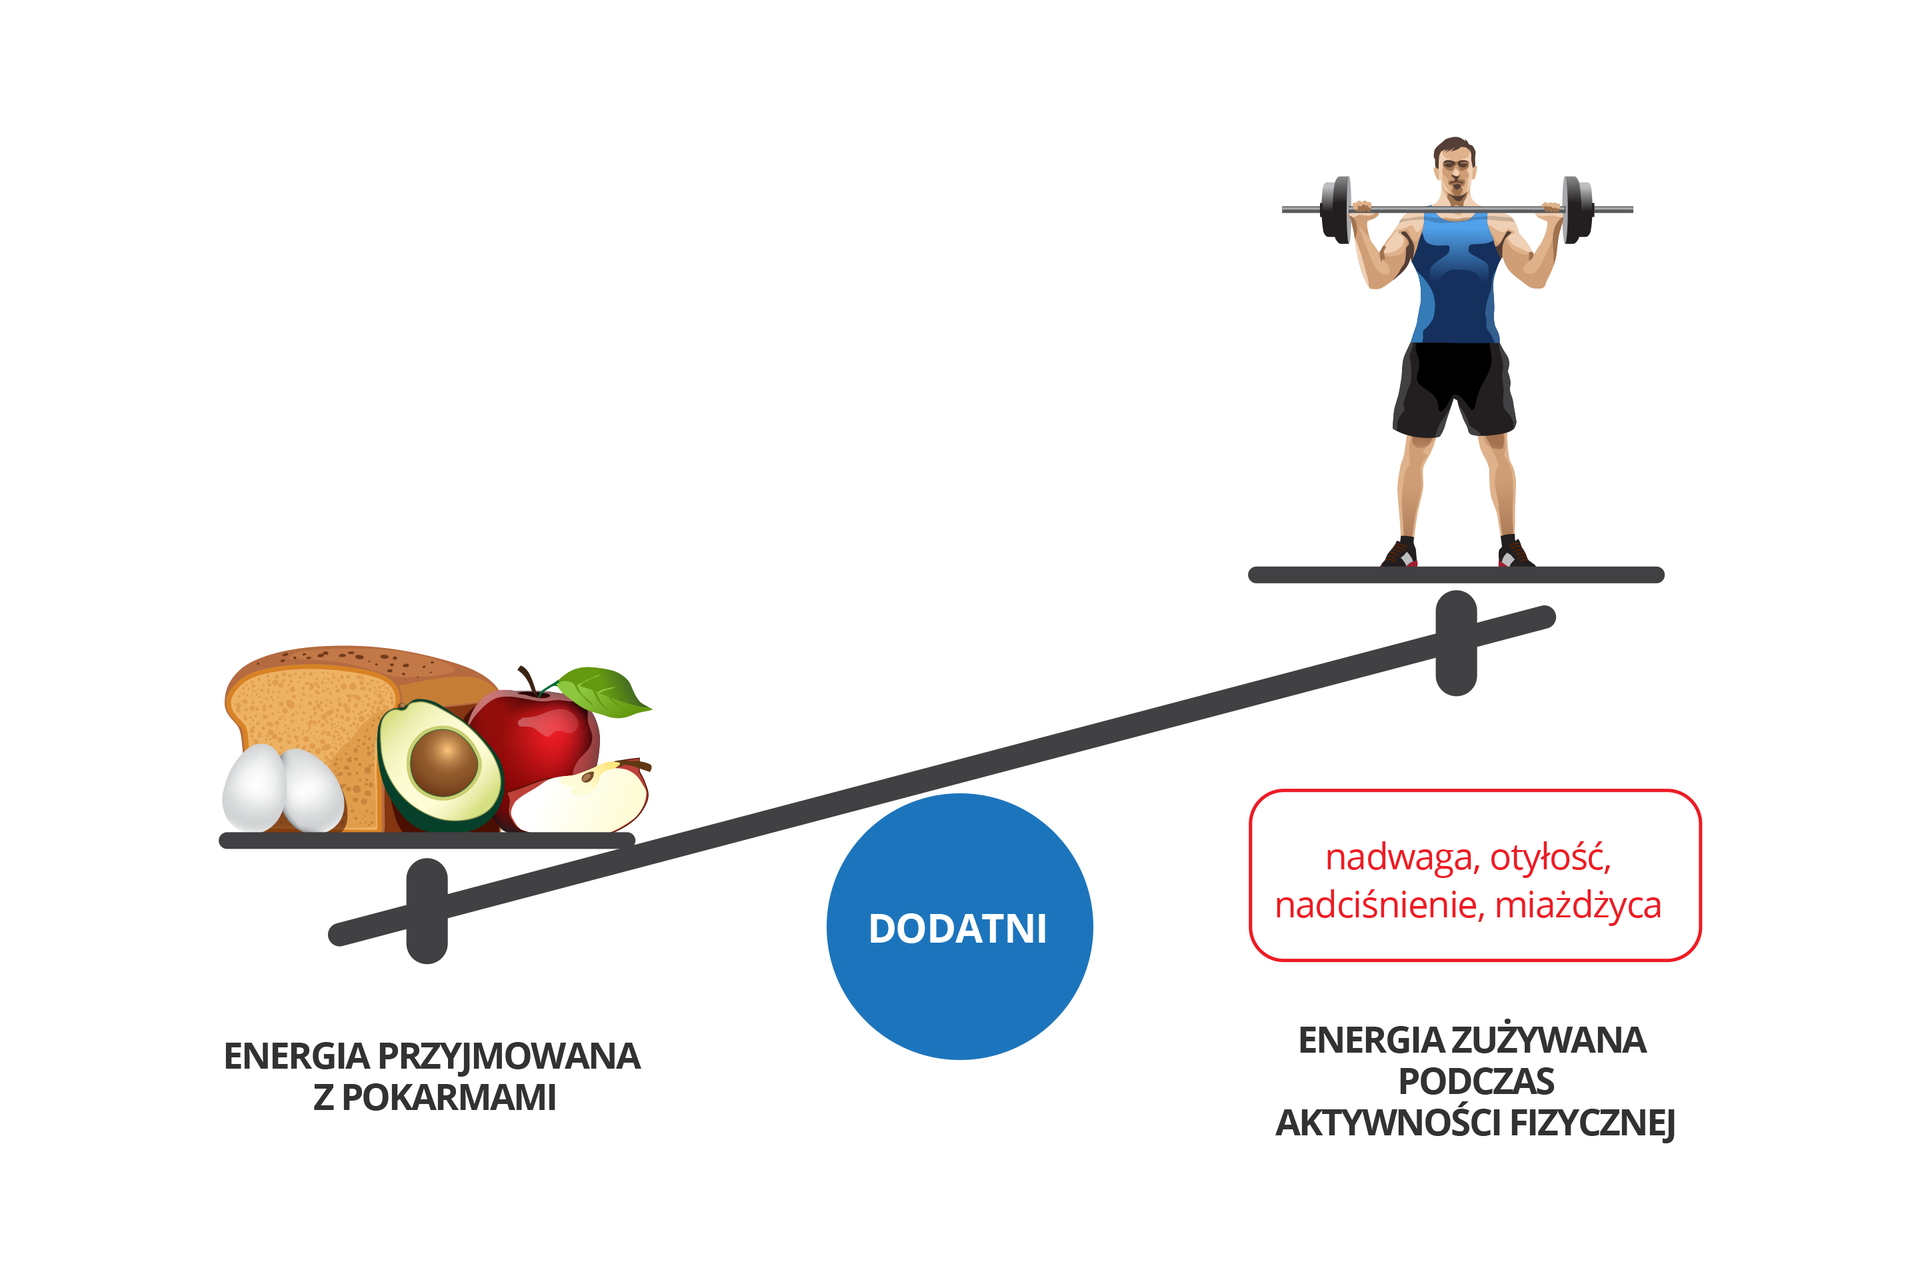 Rysunek przedstawia wagę na niebieskim kole z napisem: dodatni. Z prawej strony szala z atletą przechylona jest w górę, z lewej, szala z produktami spożywczymi znajduje się w dole. Podpis: energia przyjmowana z pokarmami. Pod atletą w czerwonej ramce: nadwaga, otyłość, nadciśnienie, miażdżyca. Podpis: energia zużywana podczas aktywności fizycznej.